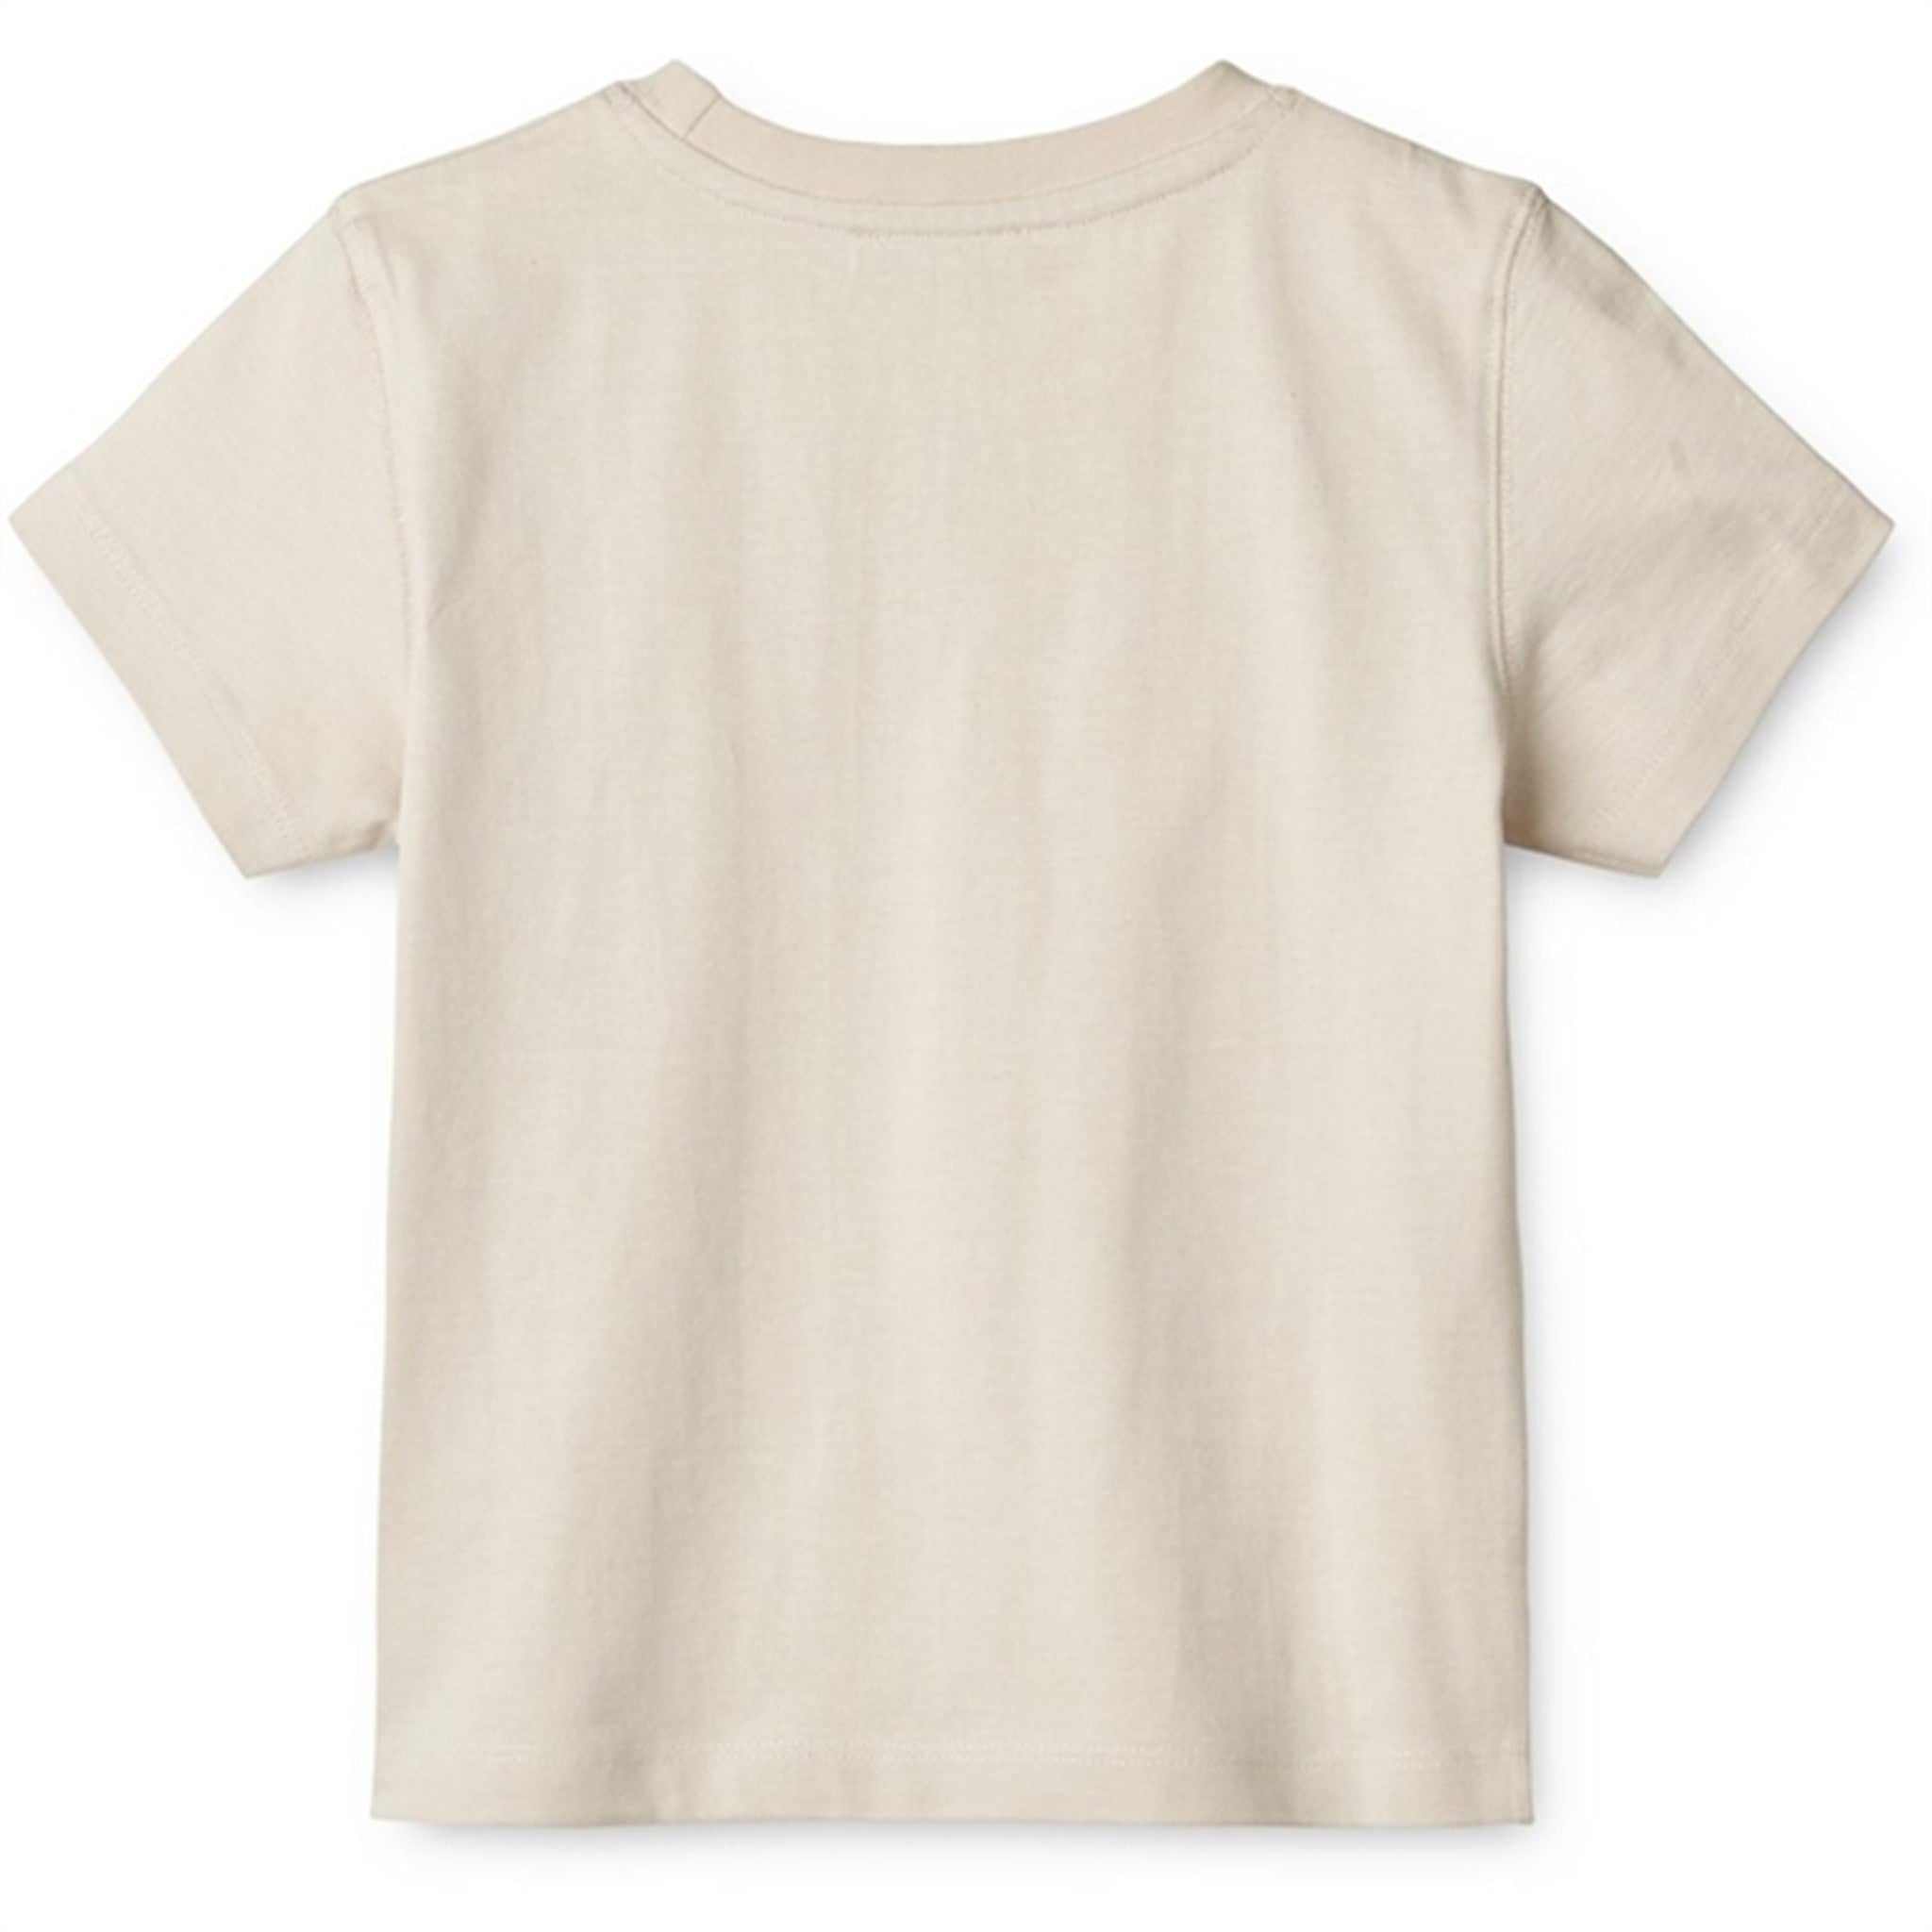 Liewood Liewood/Sandy Sixten Placement T-shirt 2